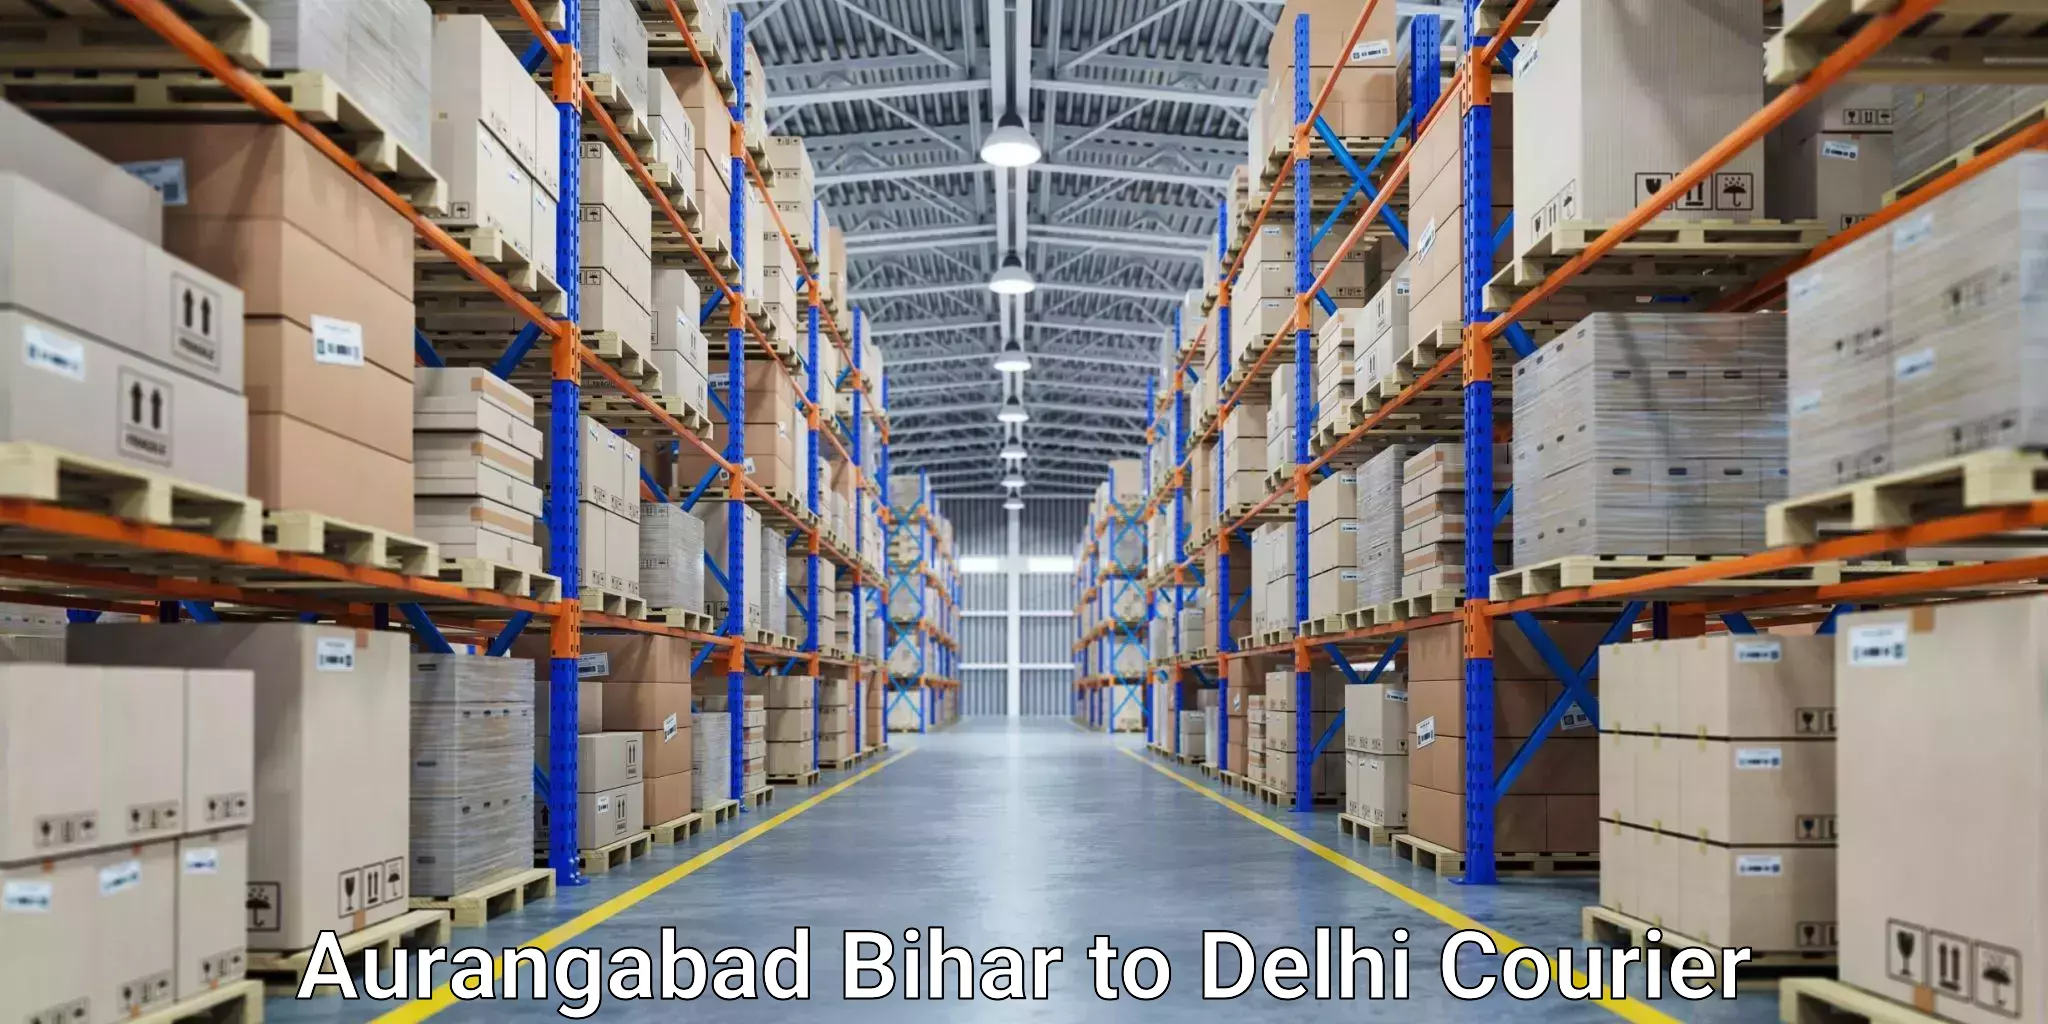 Cost-effective courier options Aurangabad Bihar to Lodhi Road